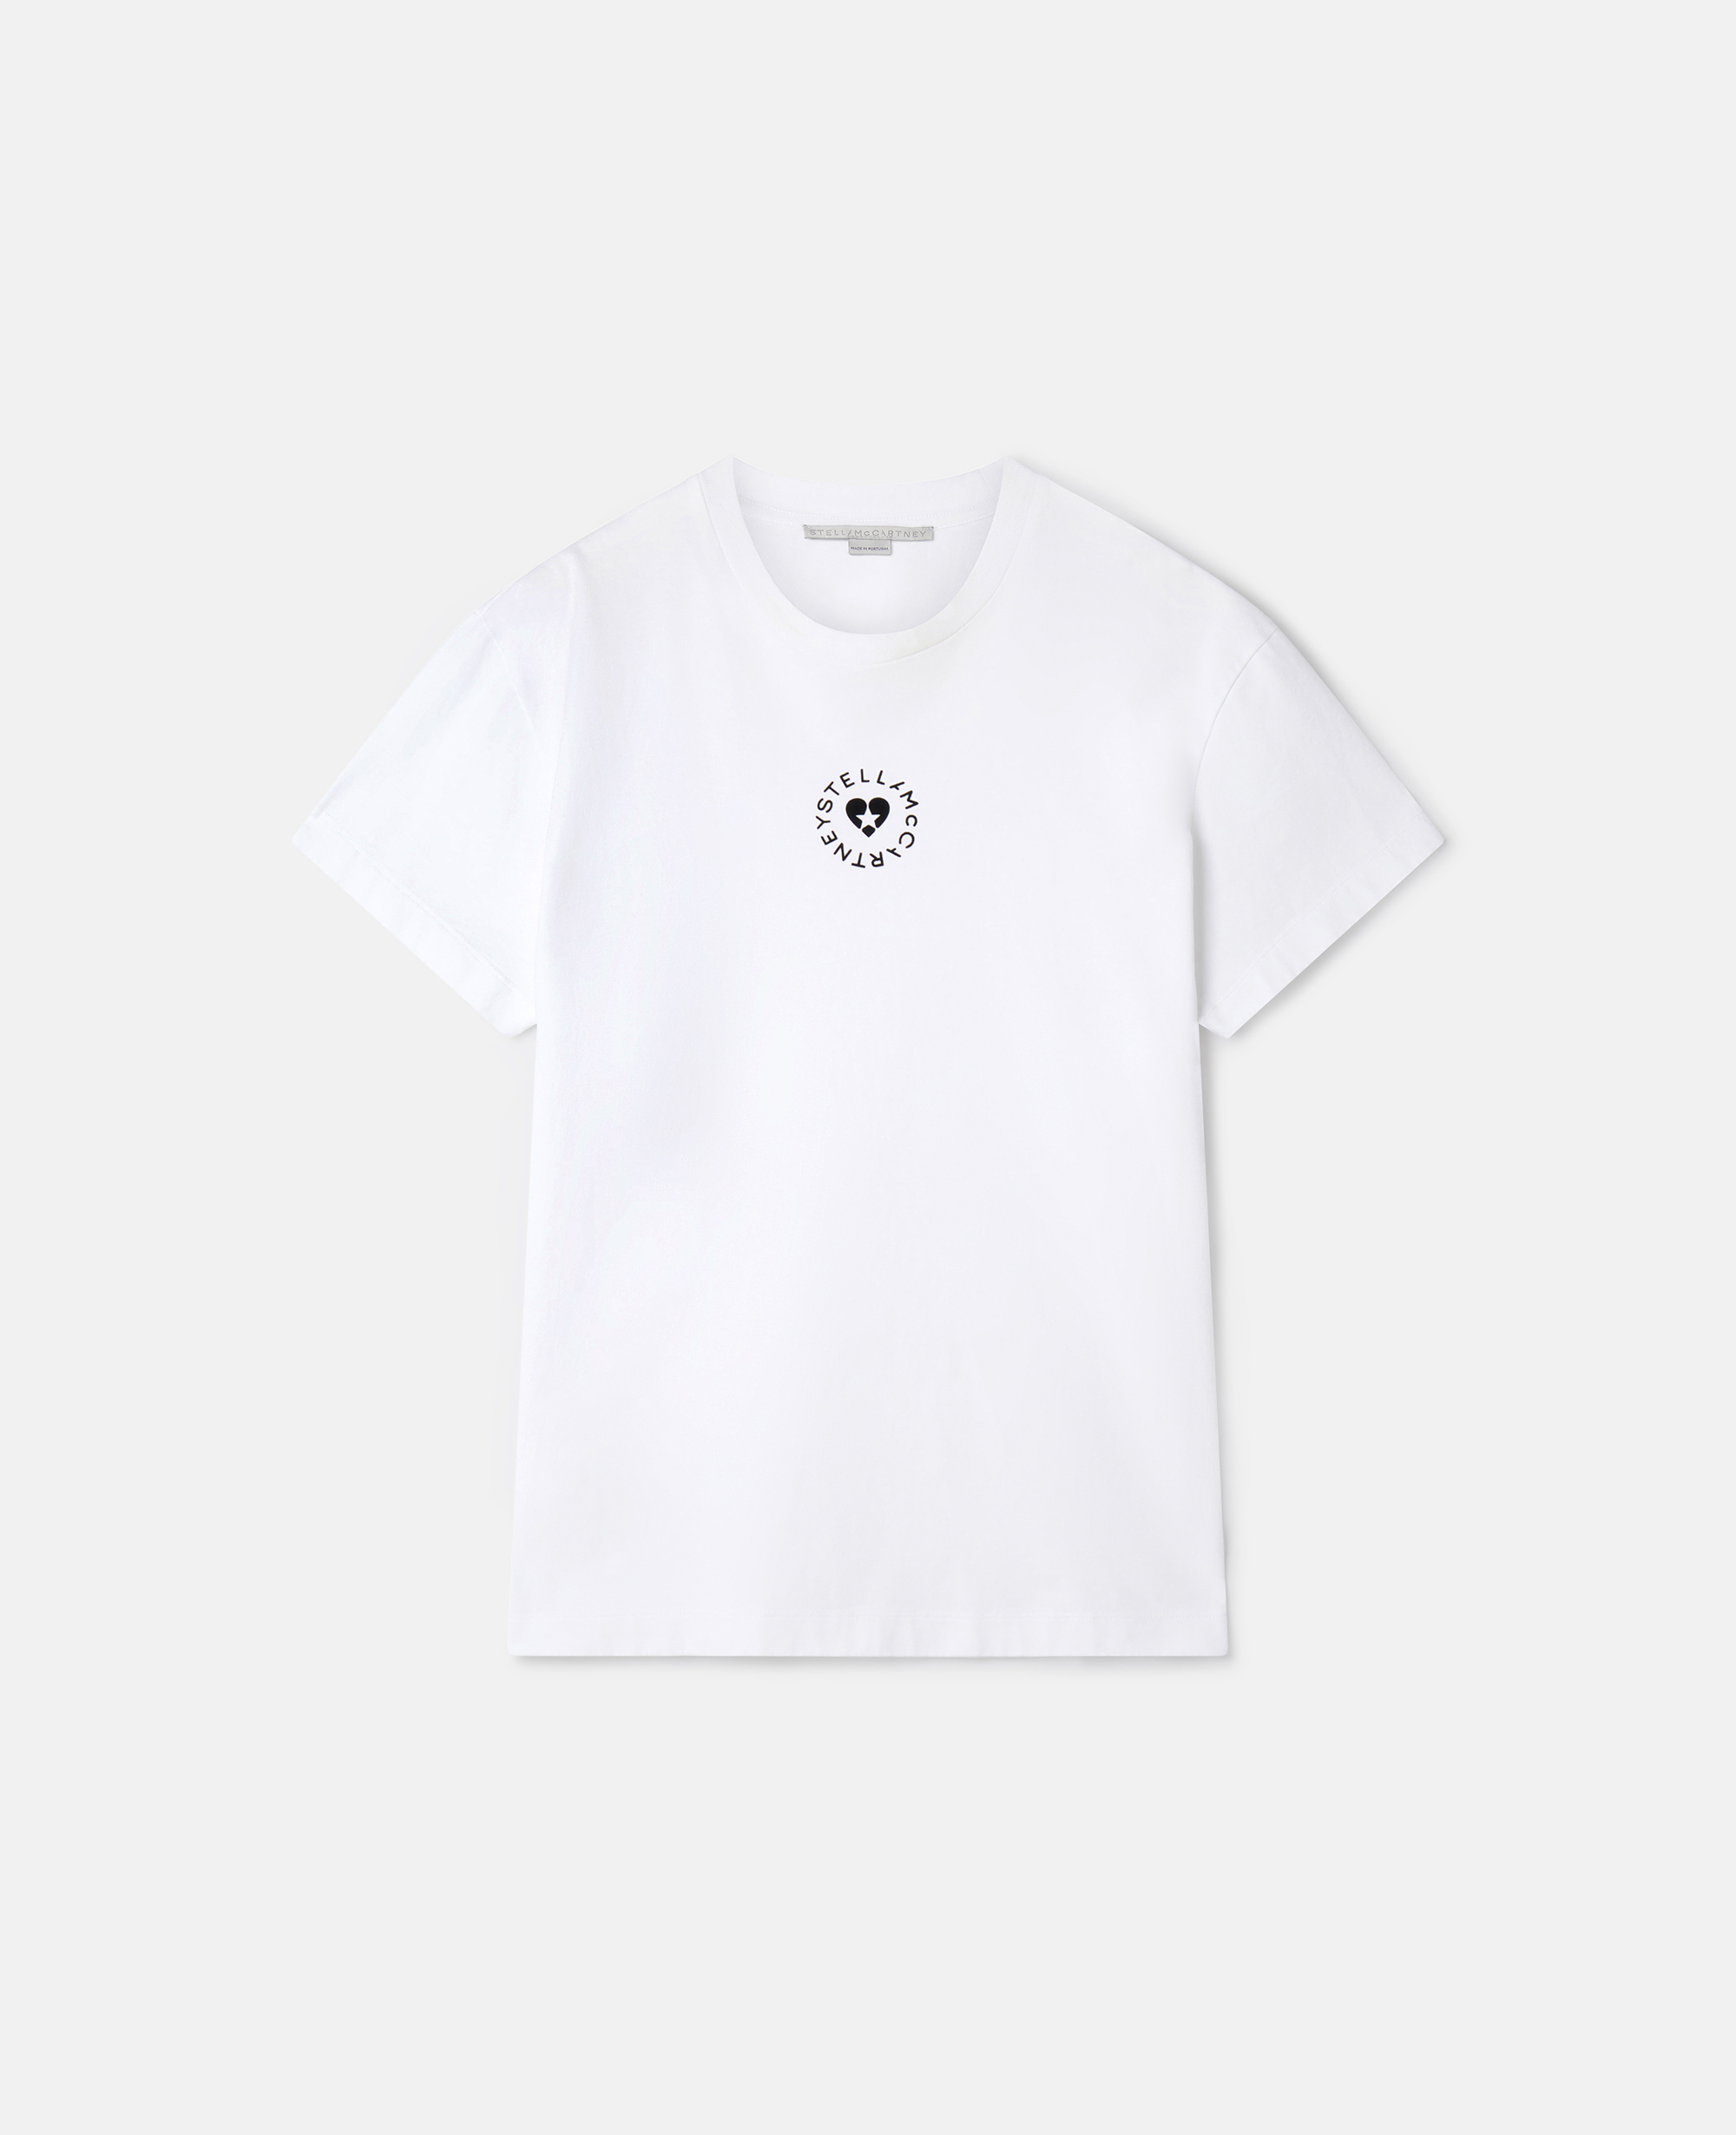 stella mccartney - lovestruck logo t-shirt, woman, white, size: l